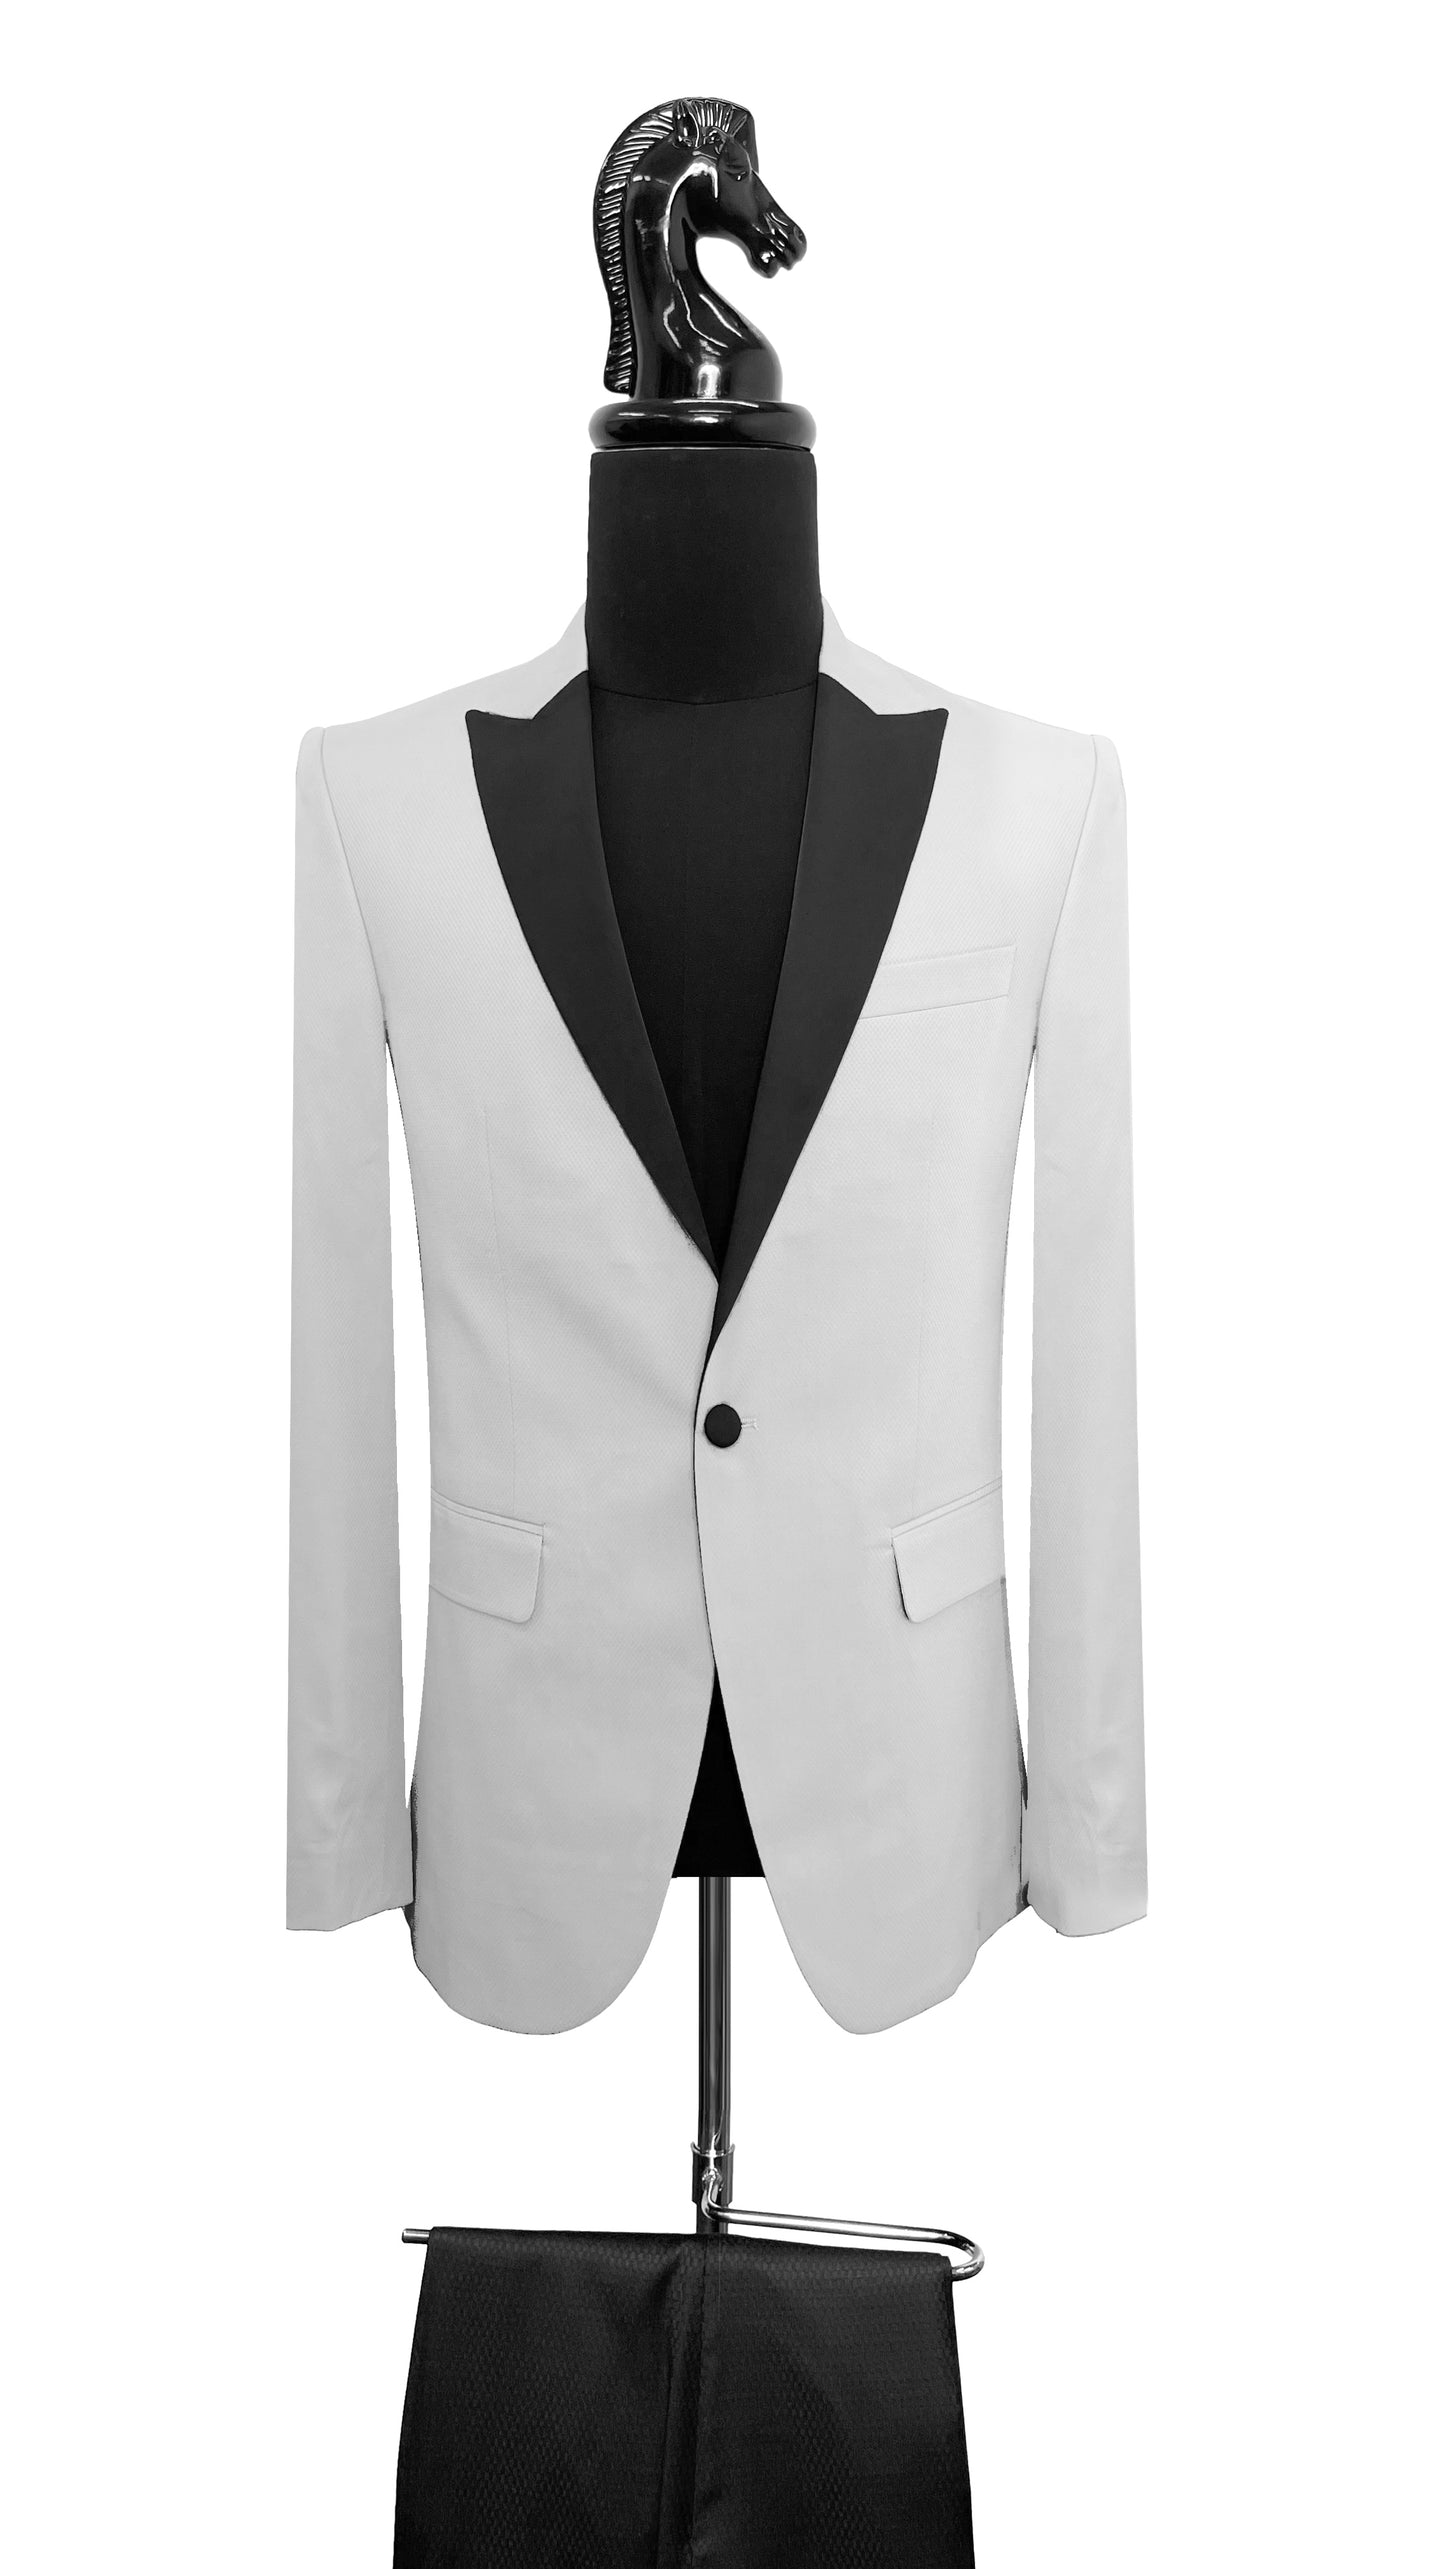 Men's Premium Classic Tuxedo by Vercini